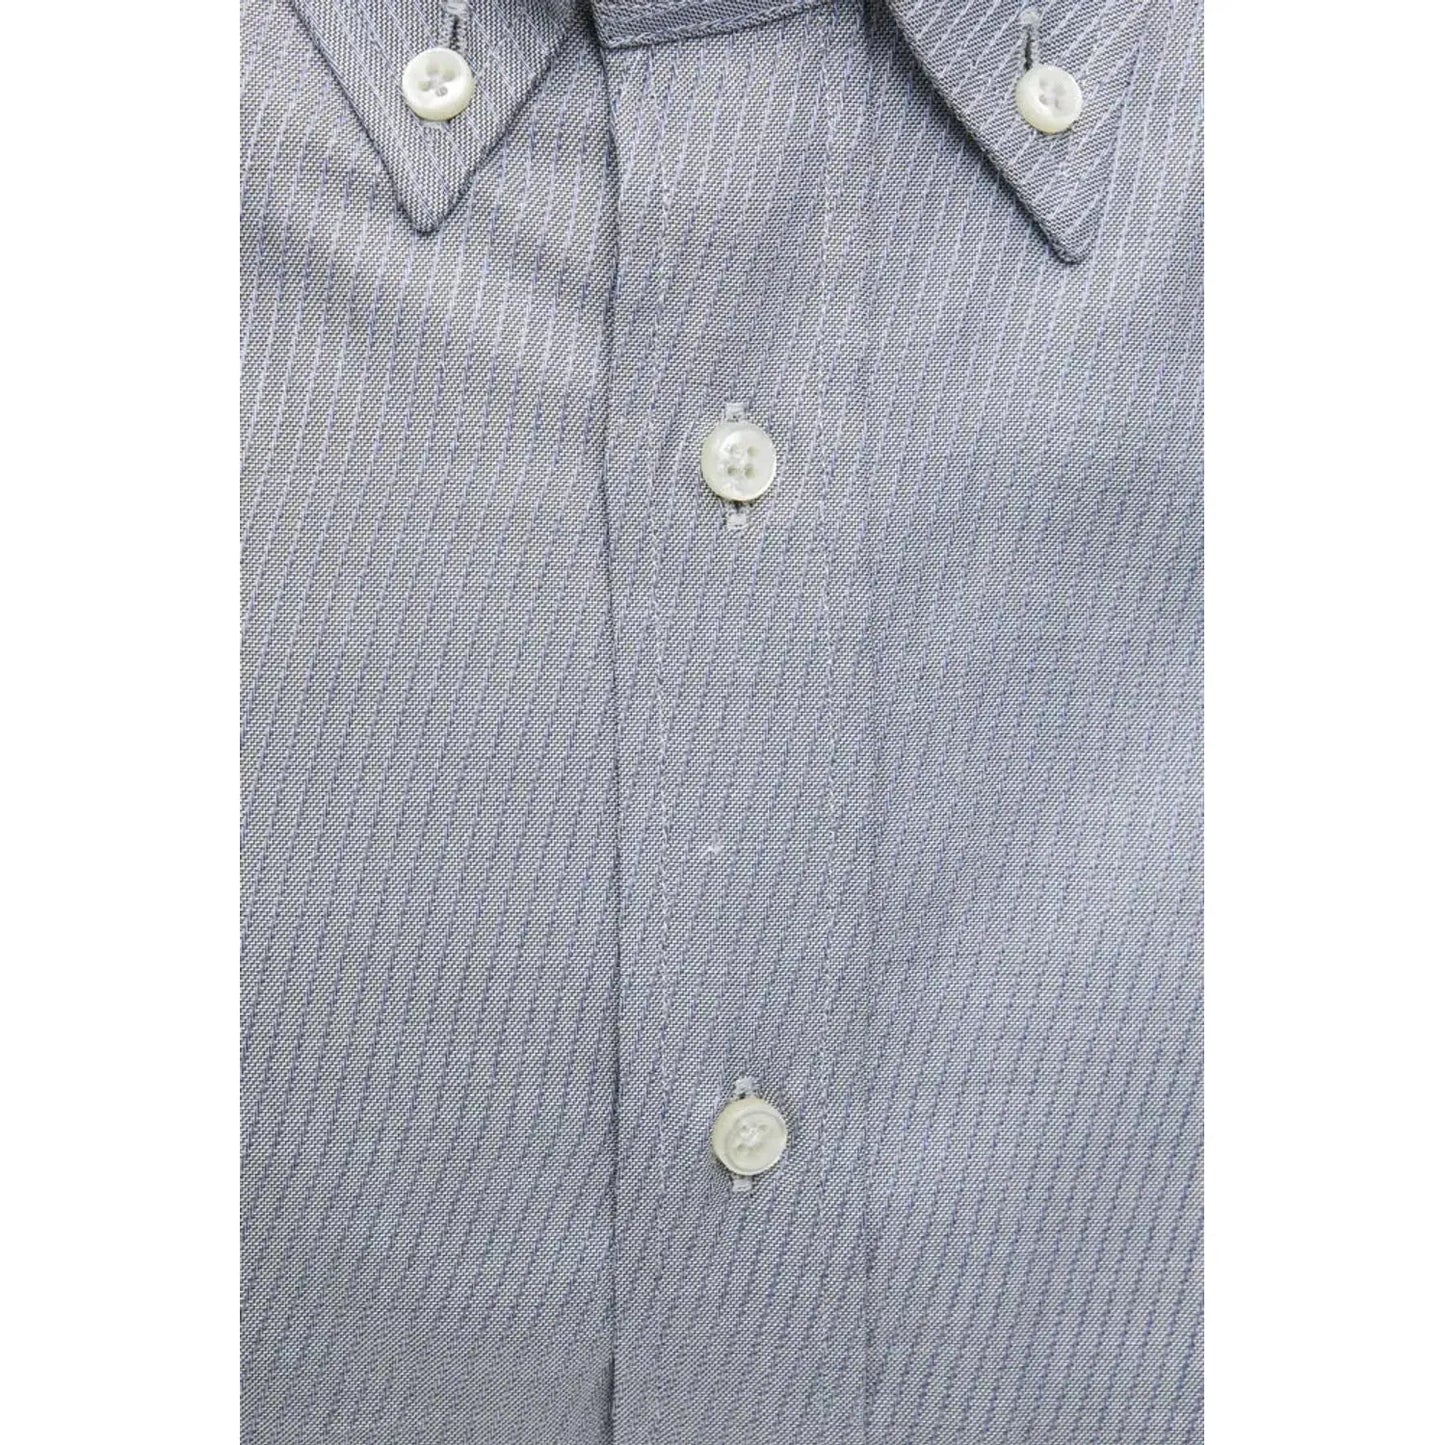 Robert Friedman Beige Cotton Button-Down Shirt - Timeless Elegance beige-cotton-shirt-7